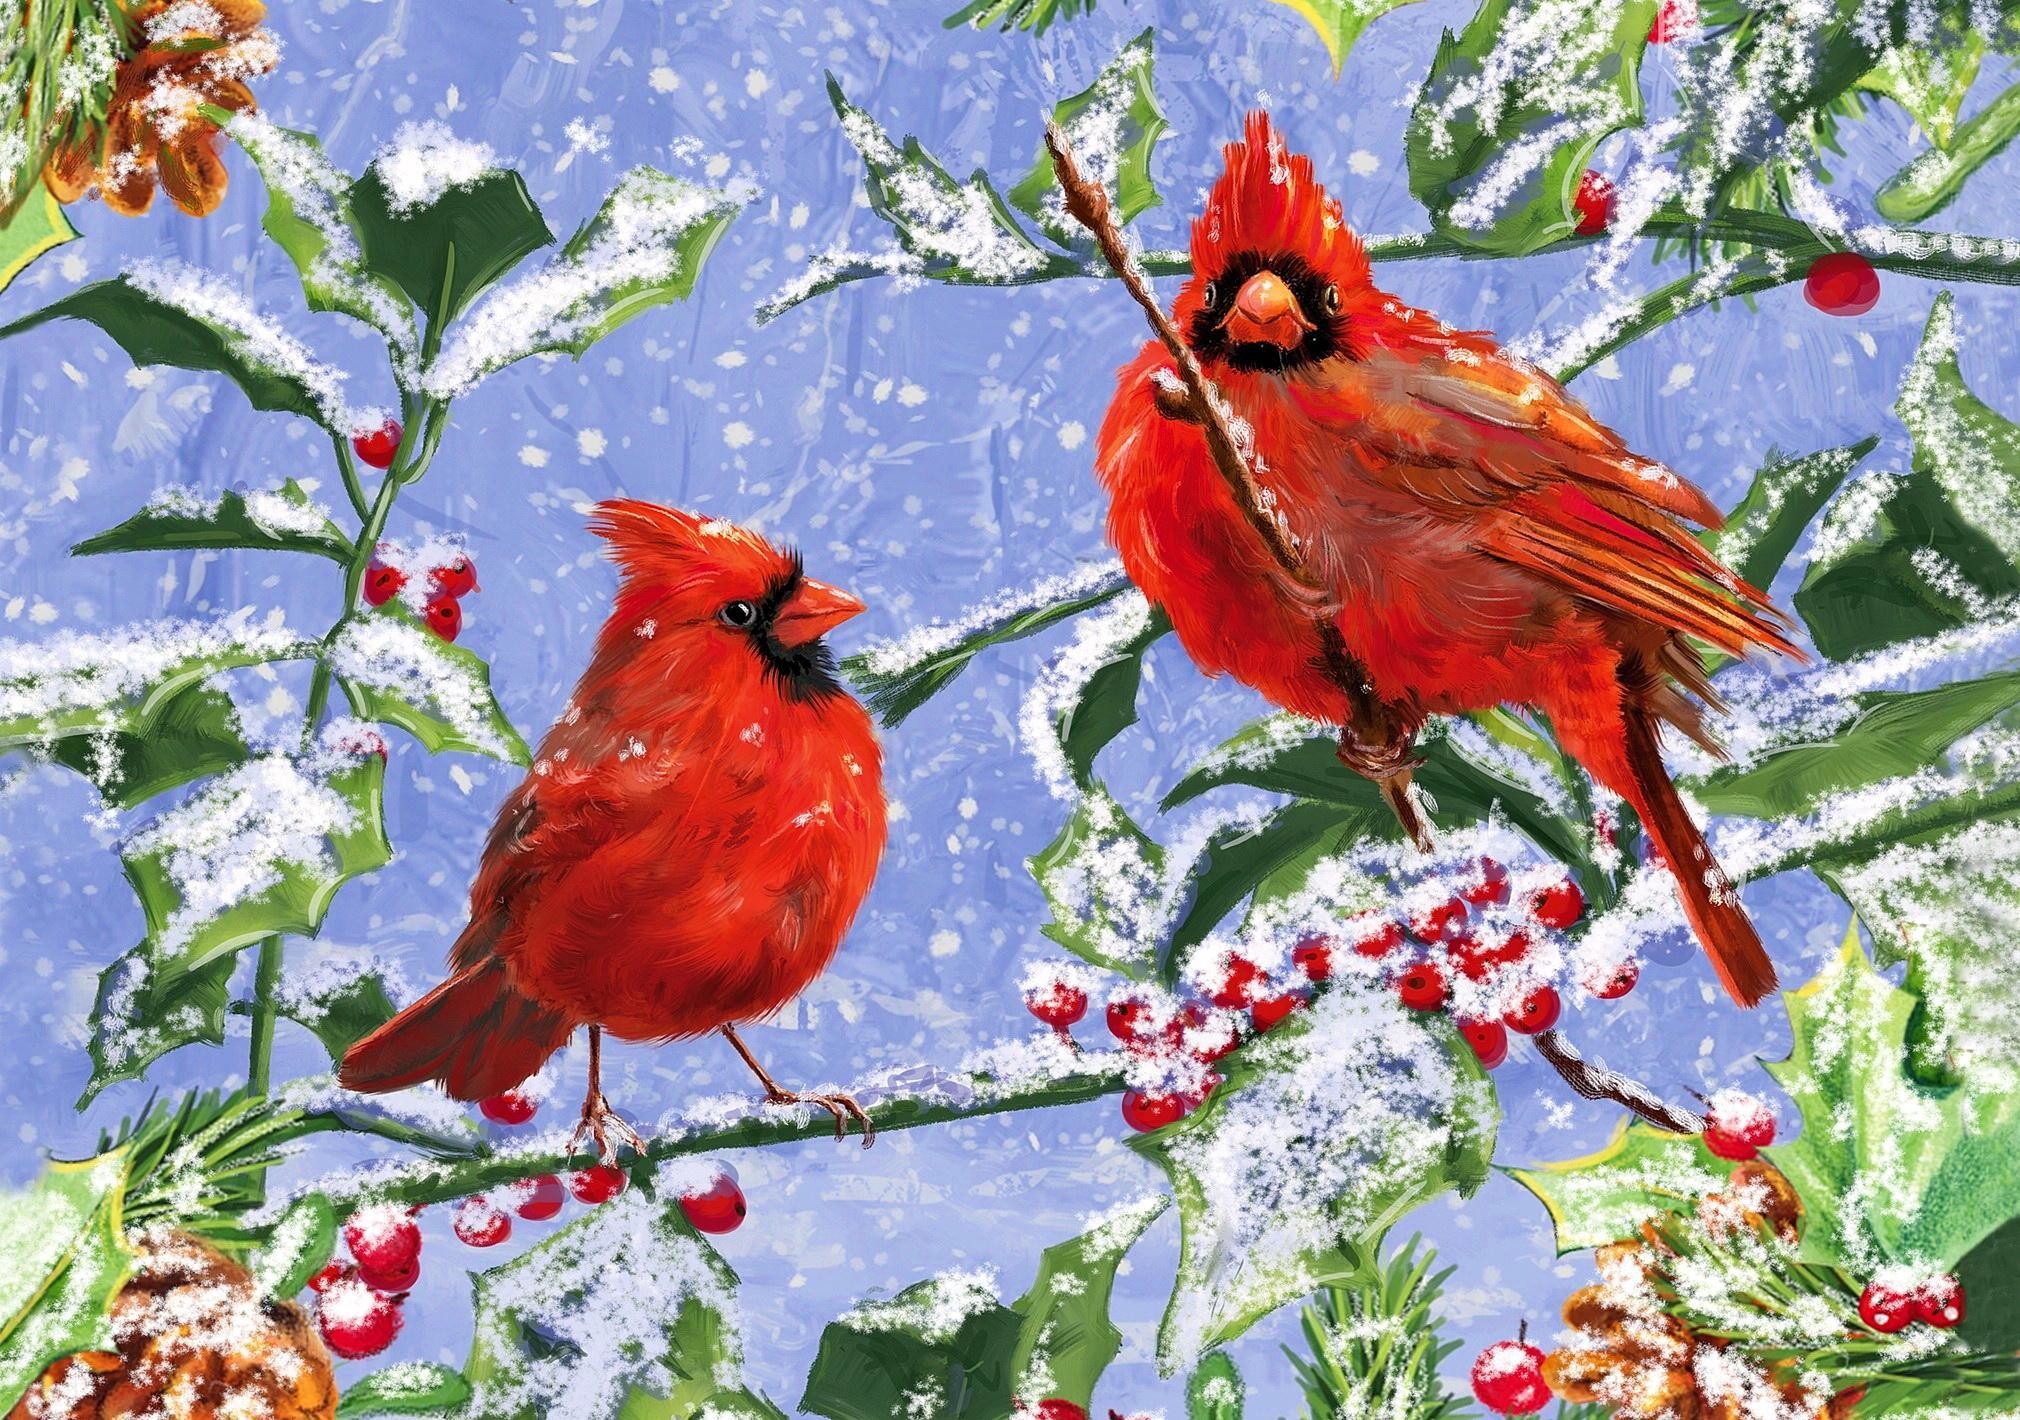 Cardinal winter